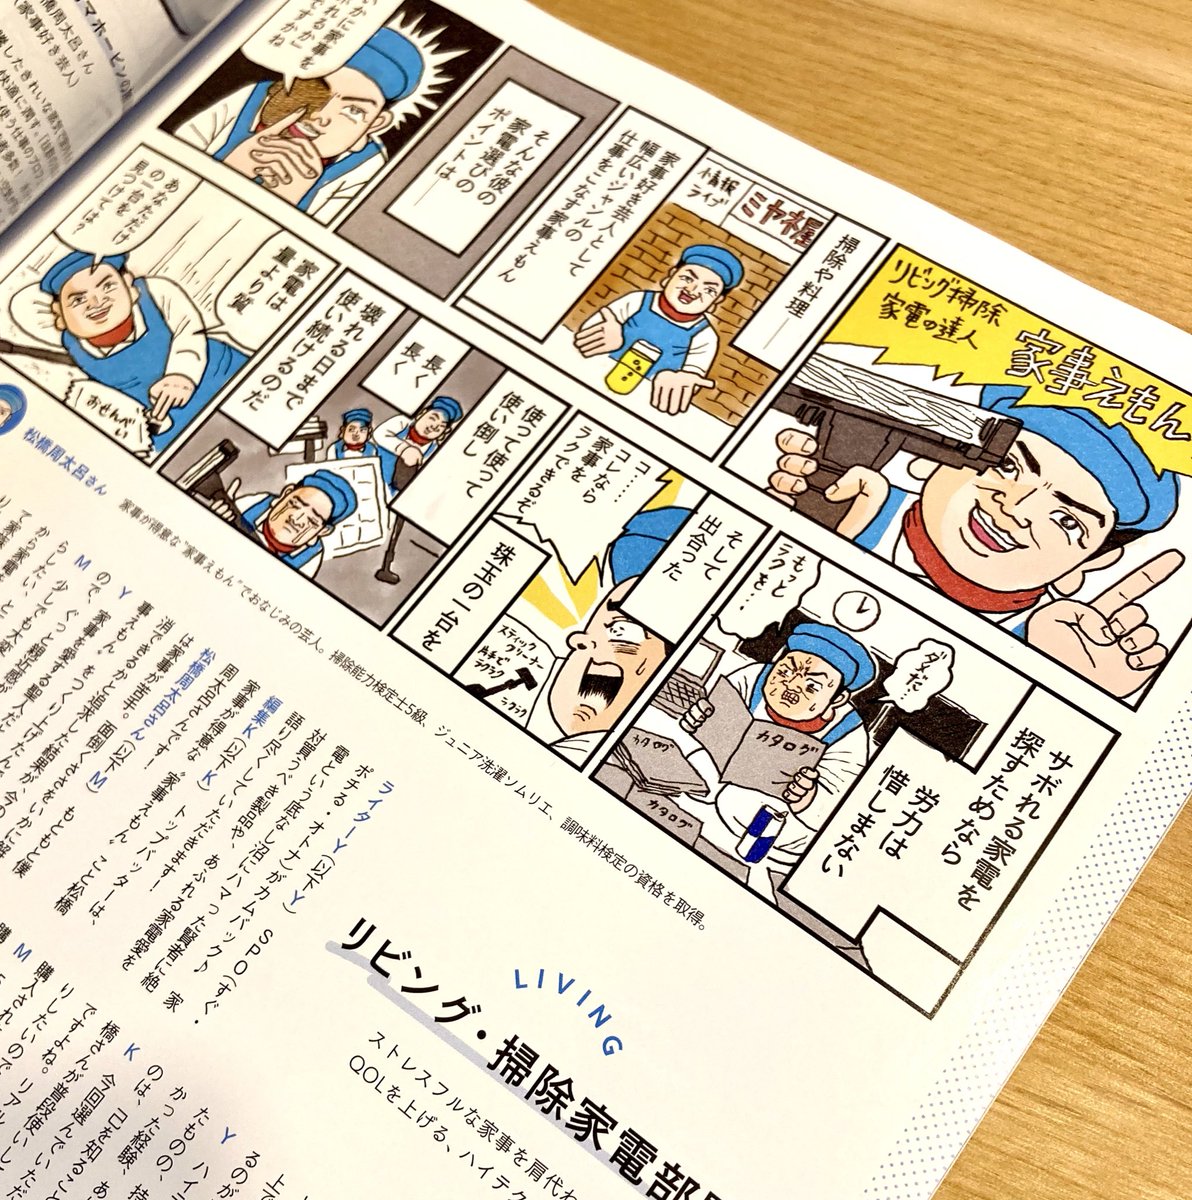 spur4月号「レッツ家電SPO」で漫画、イラスト担当しています。家事えもんさん、鈴木えみさん、奈津子さんがゲストです。 